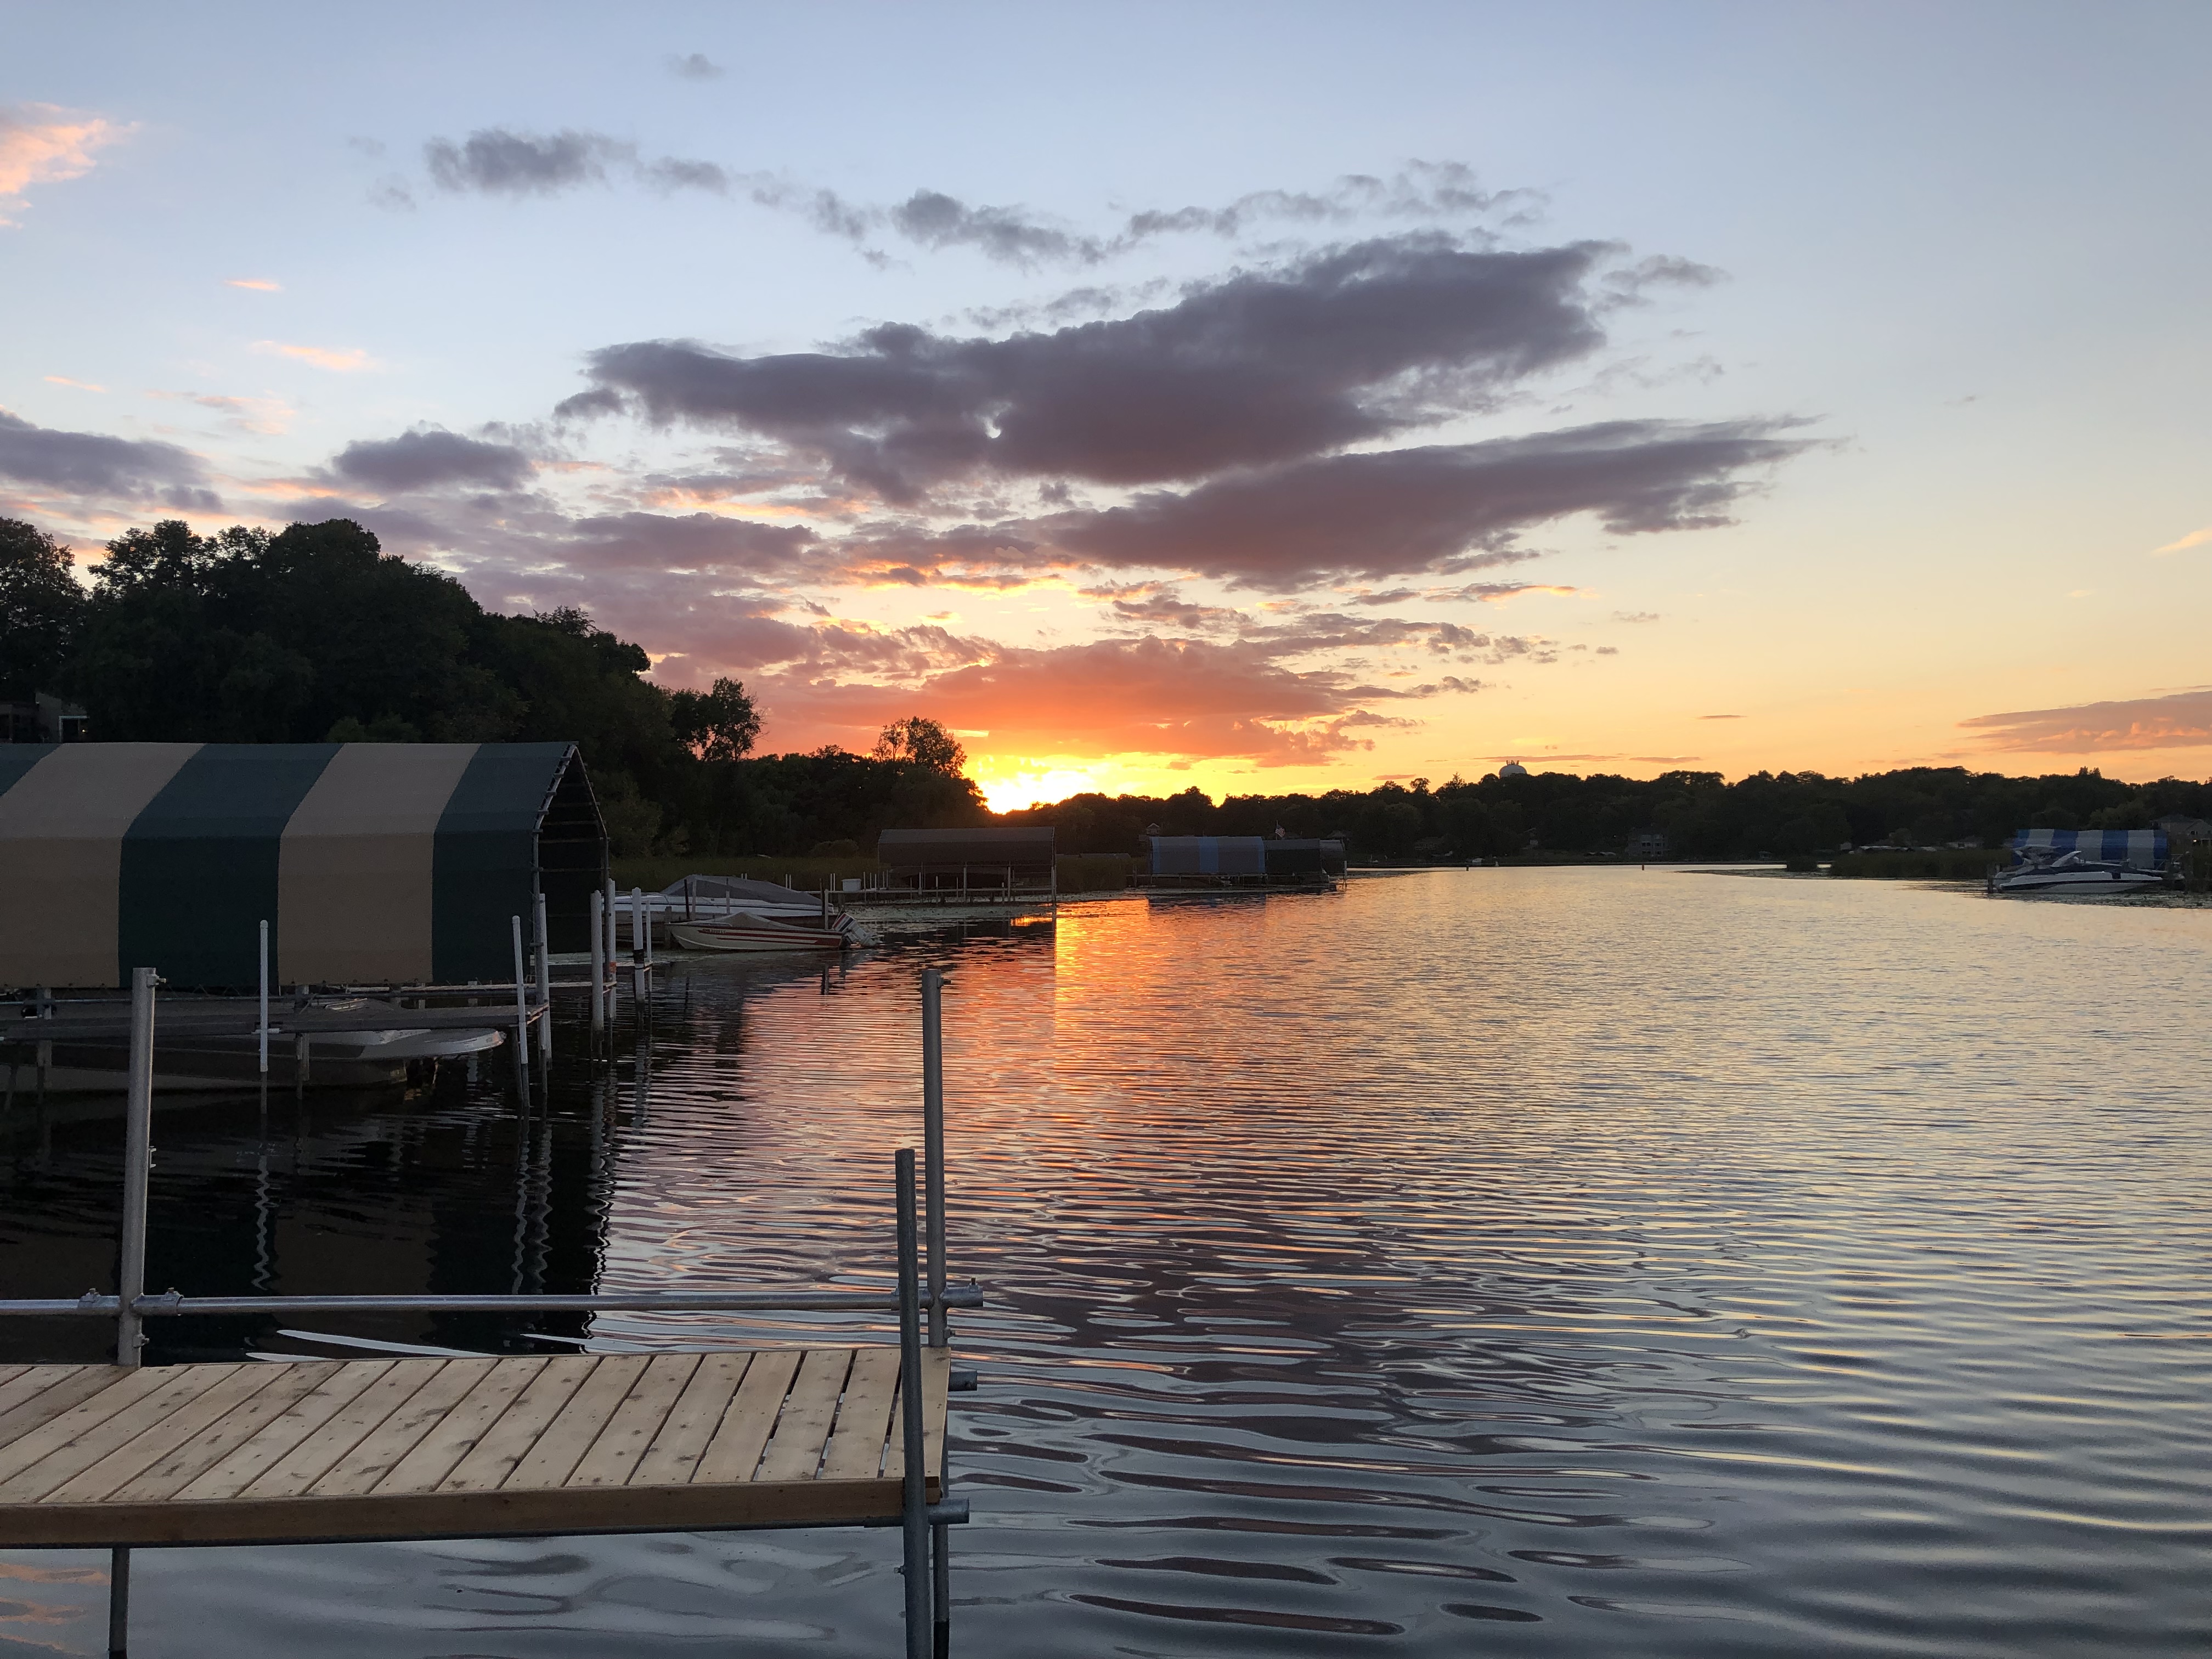 Sunset view of Black Lake